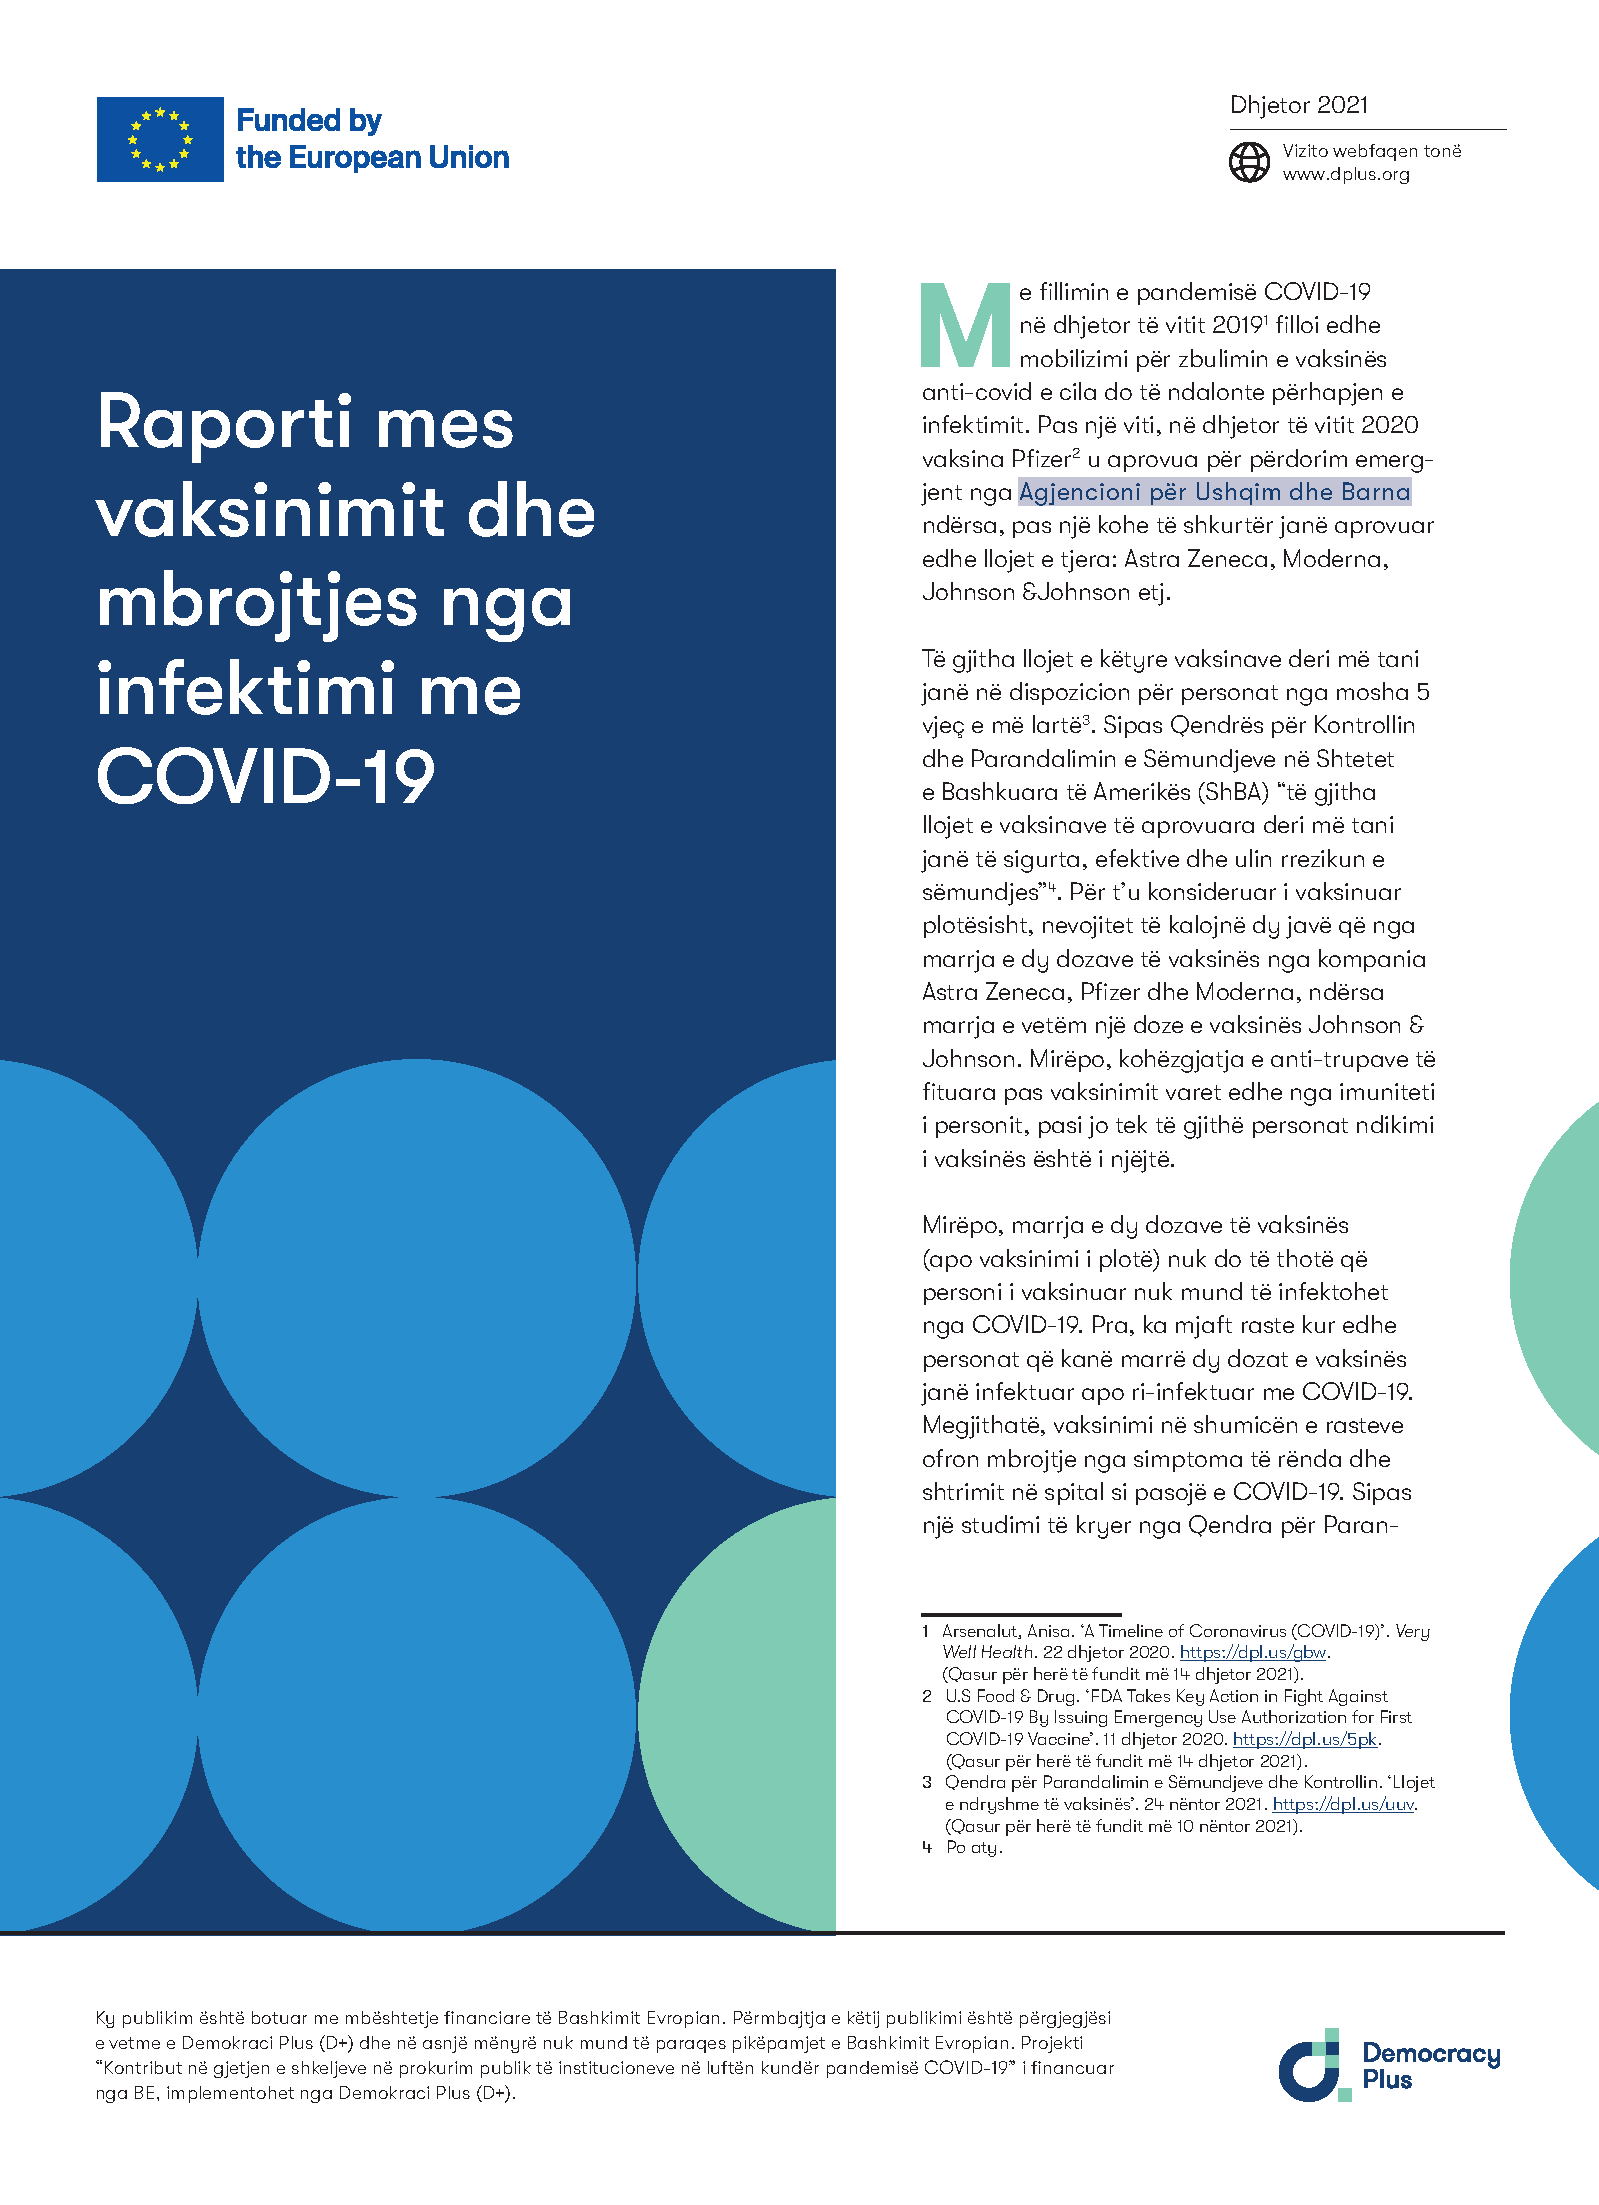 Raporti mes vaksinimit dhe mbrojtjes nga infektimi me COVID-19